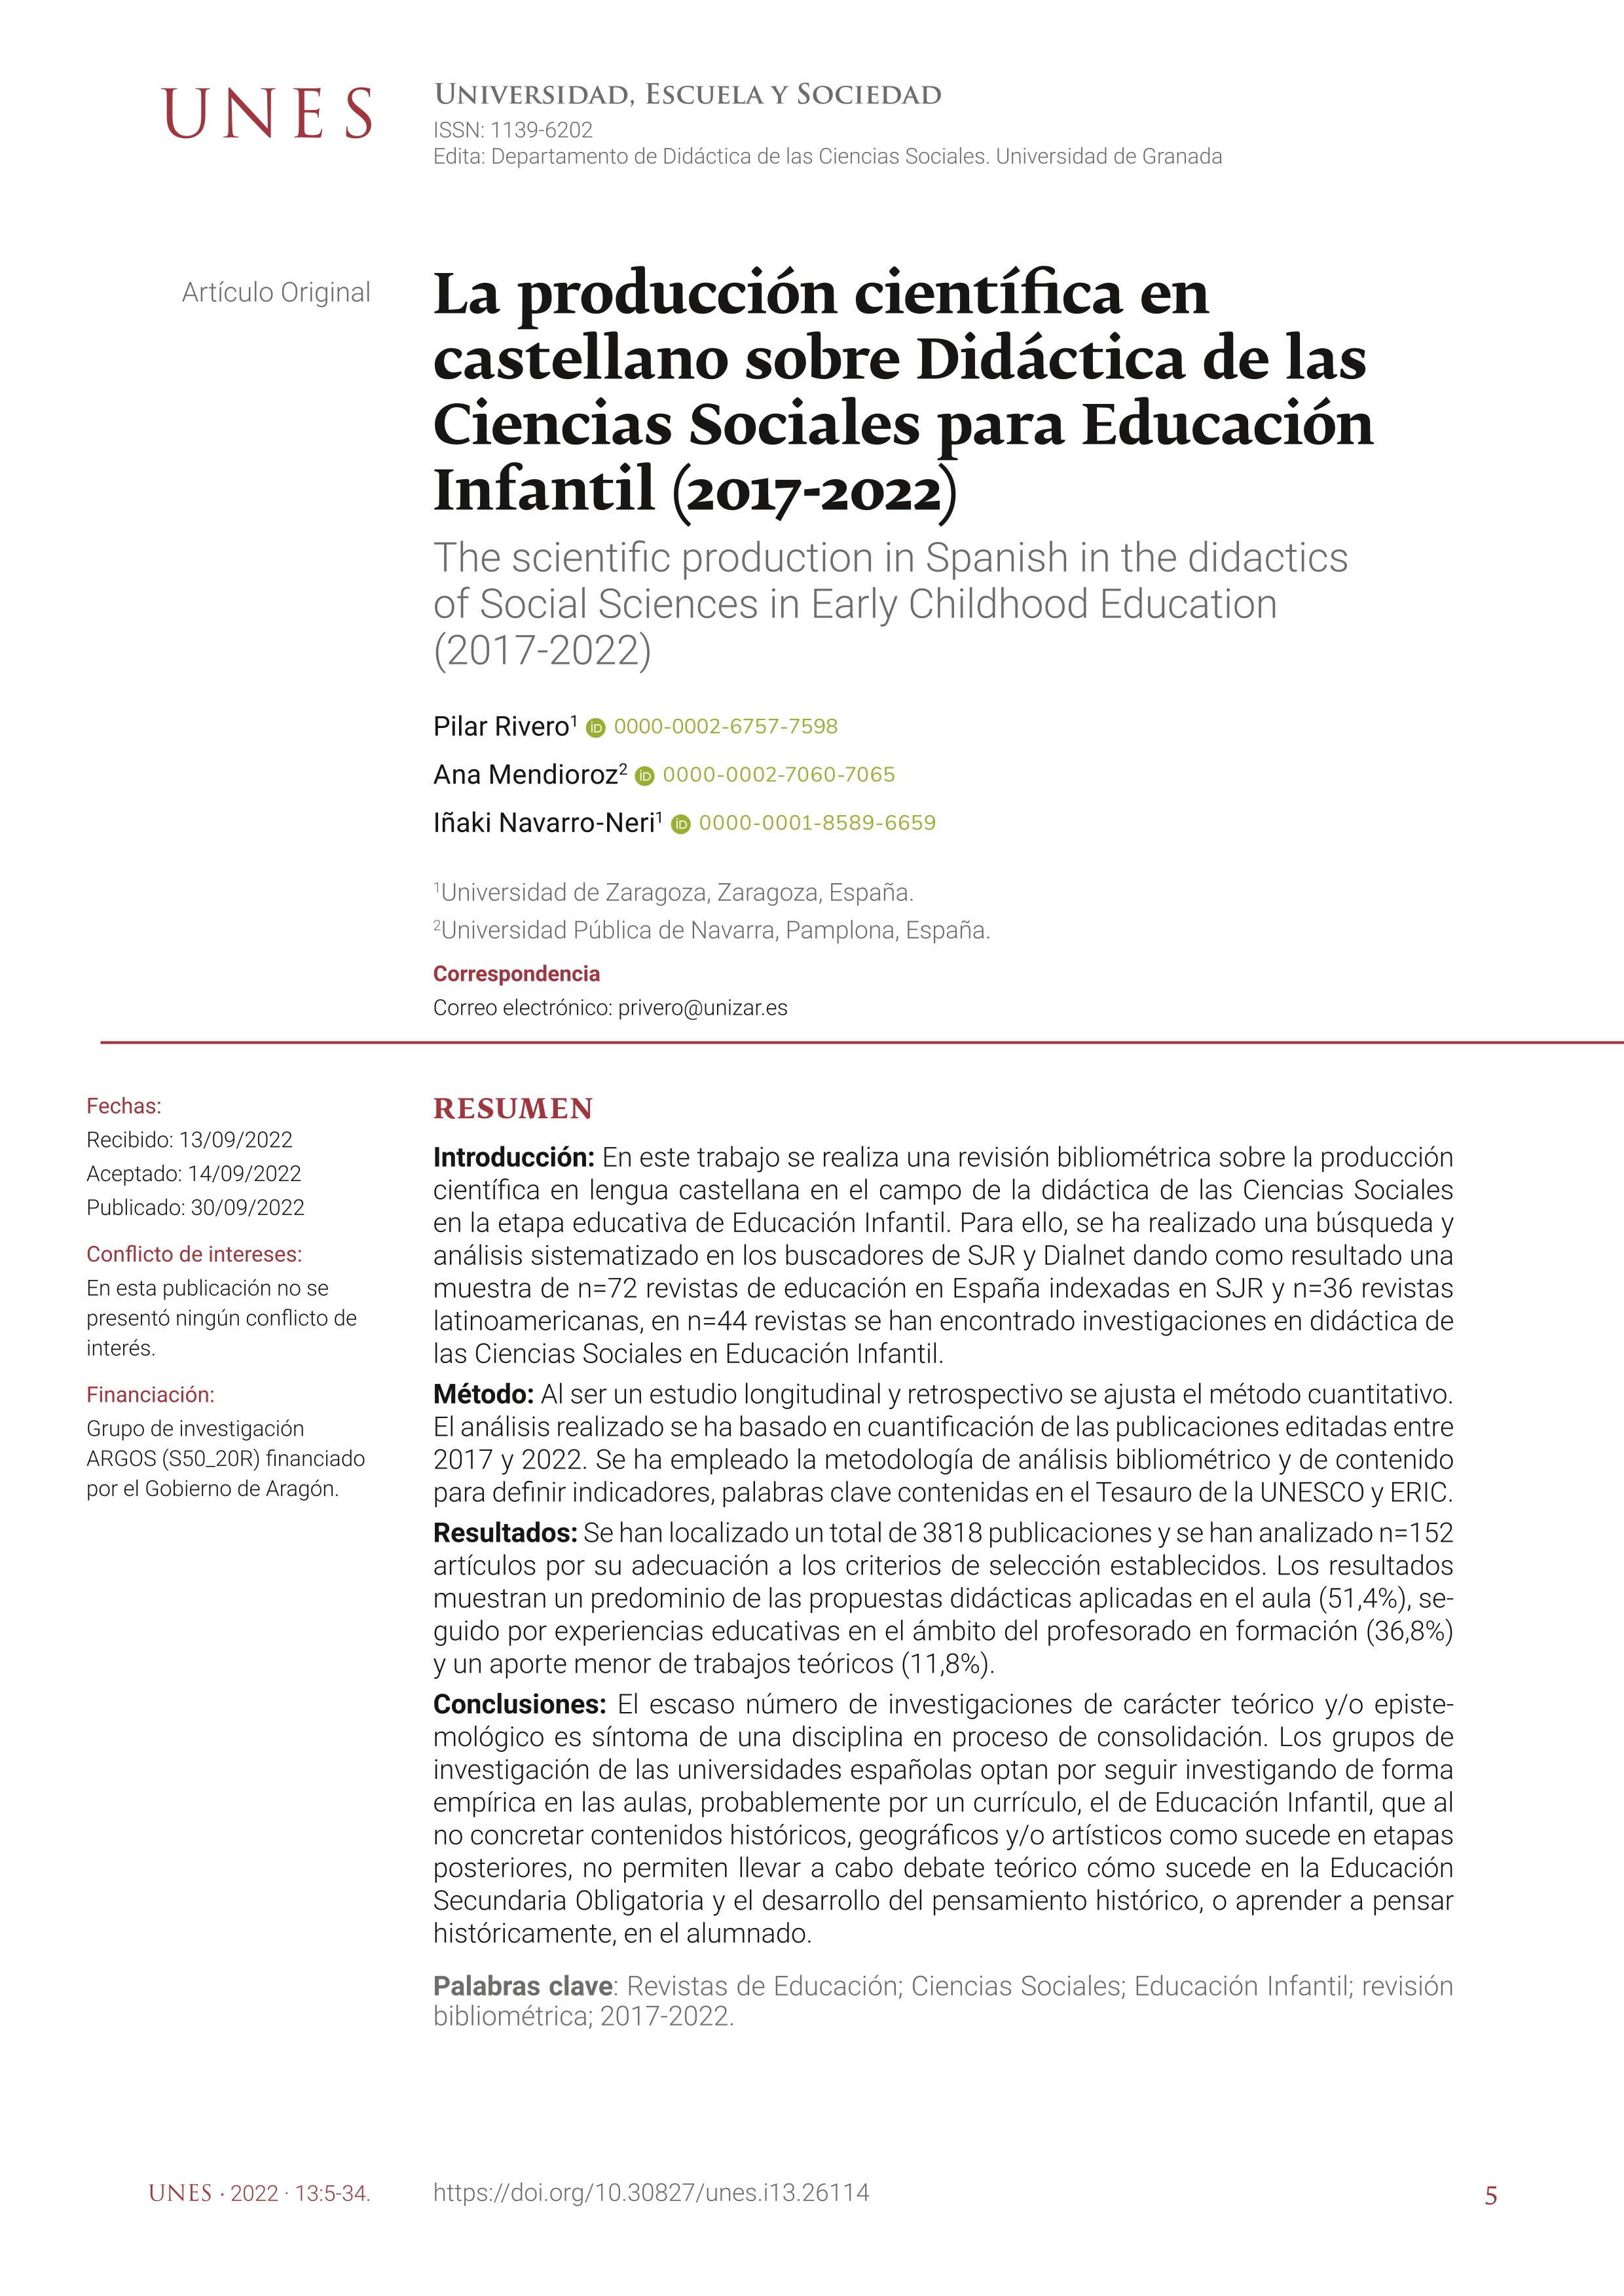 La producción científica en castellano en didáctica de las ciencias sociales en educación infantil (2017-2022)